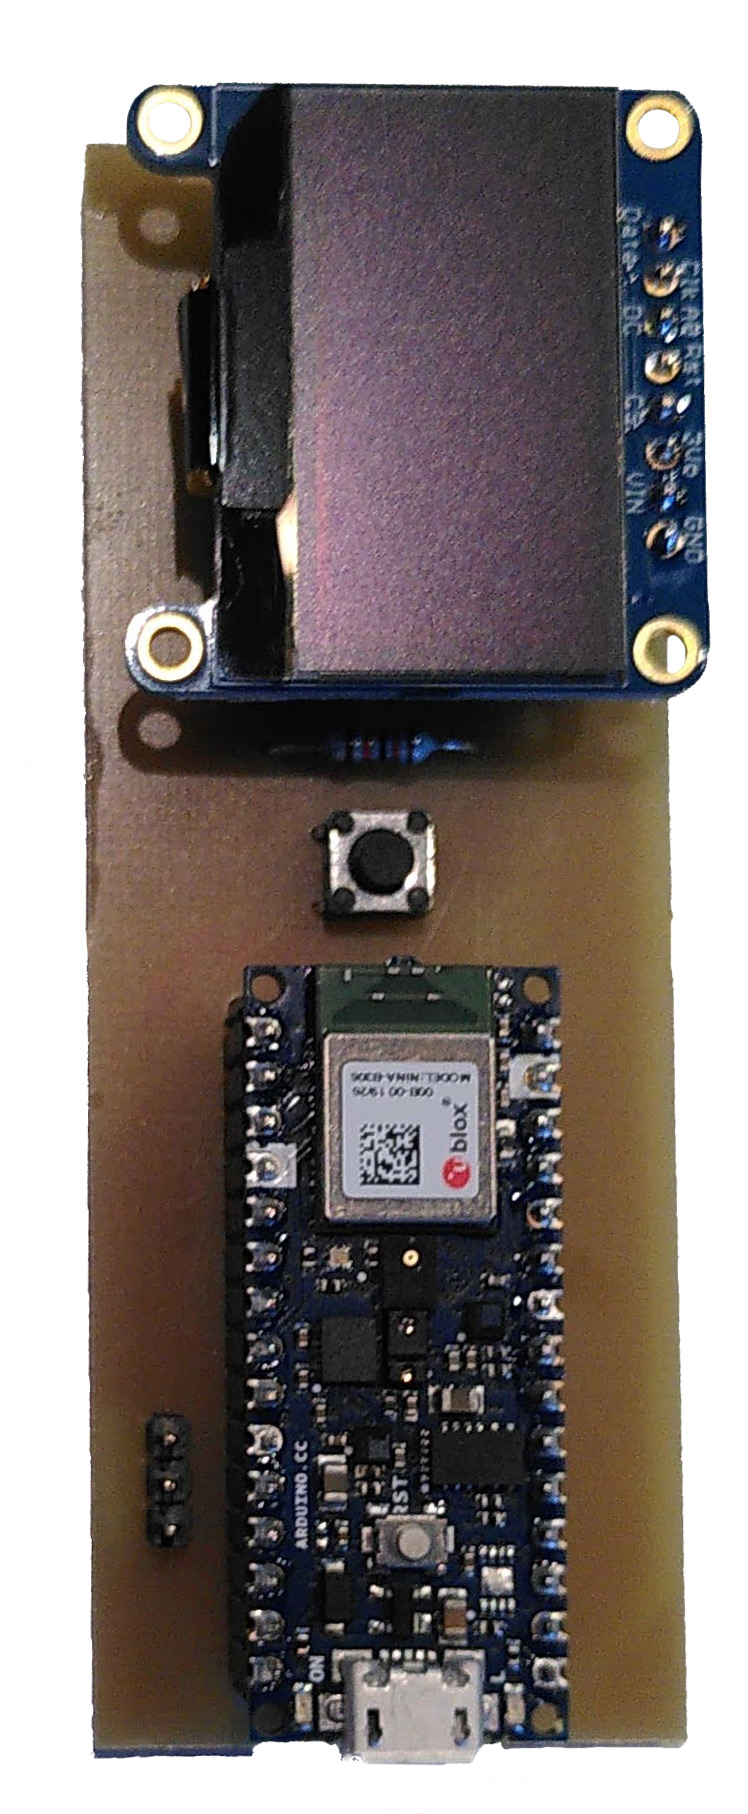 Demonstrator für die personalisierbare Gestenerkennung auf Basis eines Arduino Nano 33 BLE Sense Entwicklungsboards